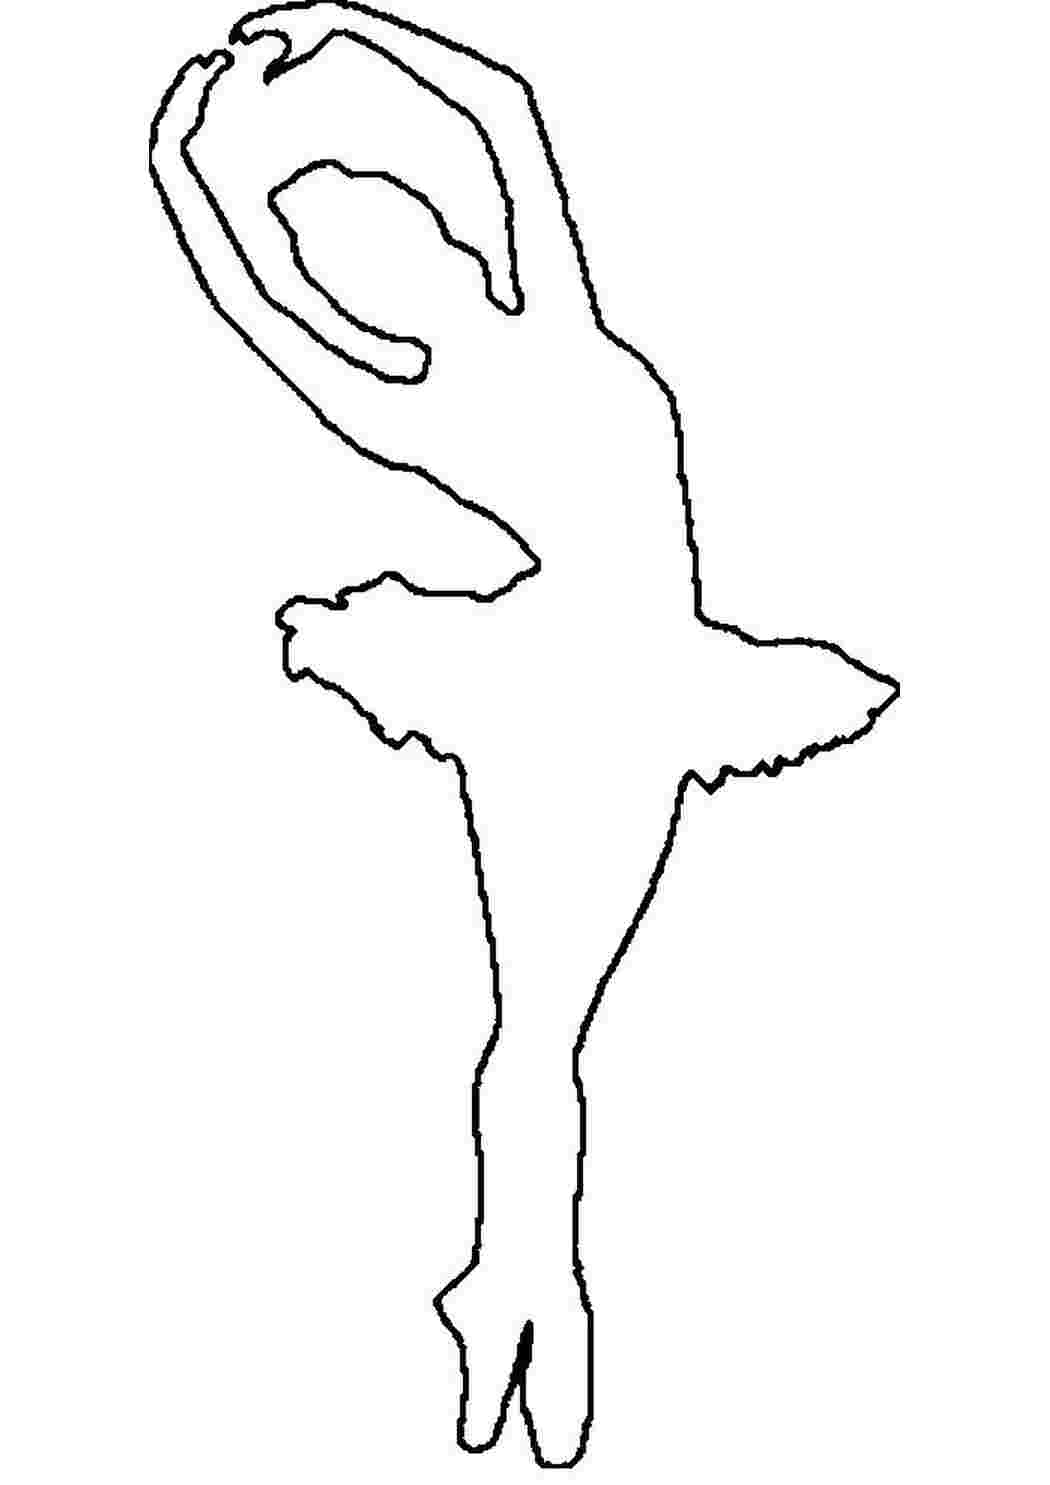 Раскраски балерина трафарет для вырезания из бумаги Раскраски шаблоны балерин 